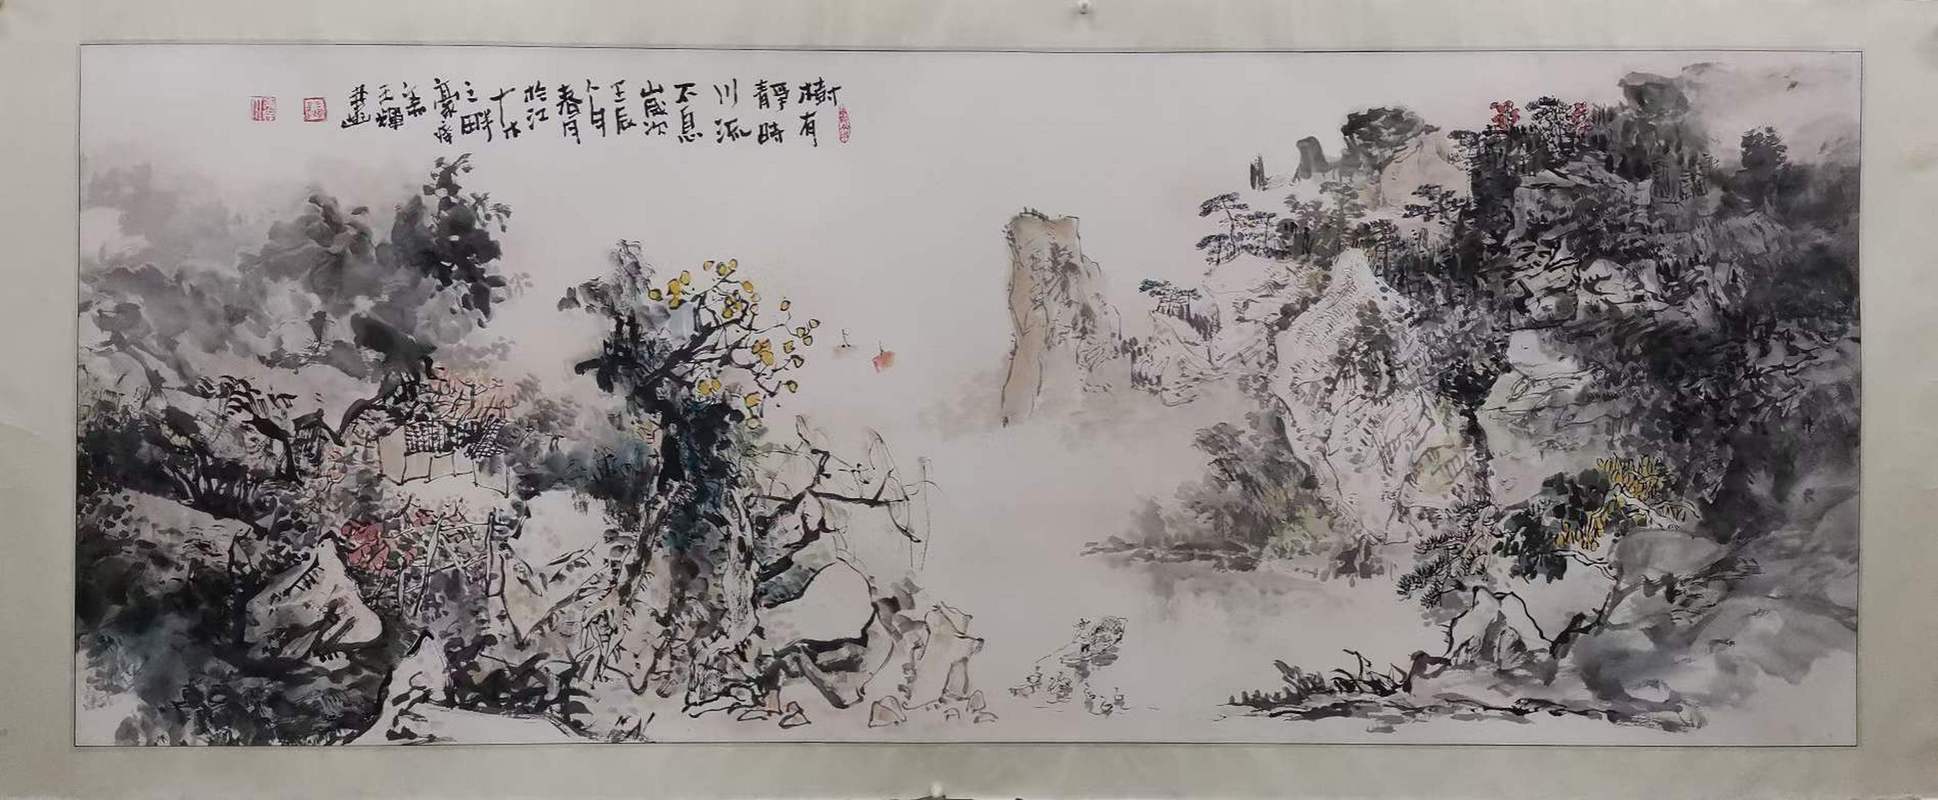 王辉,1963年生于广西桂林,中国美术家协会会员,中国画艺委会委员,中华